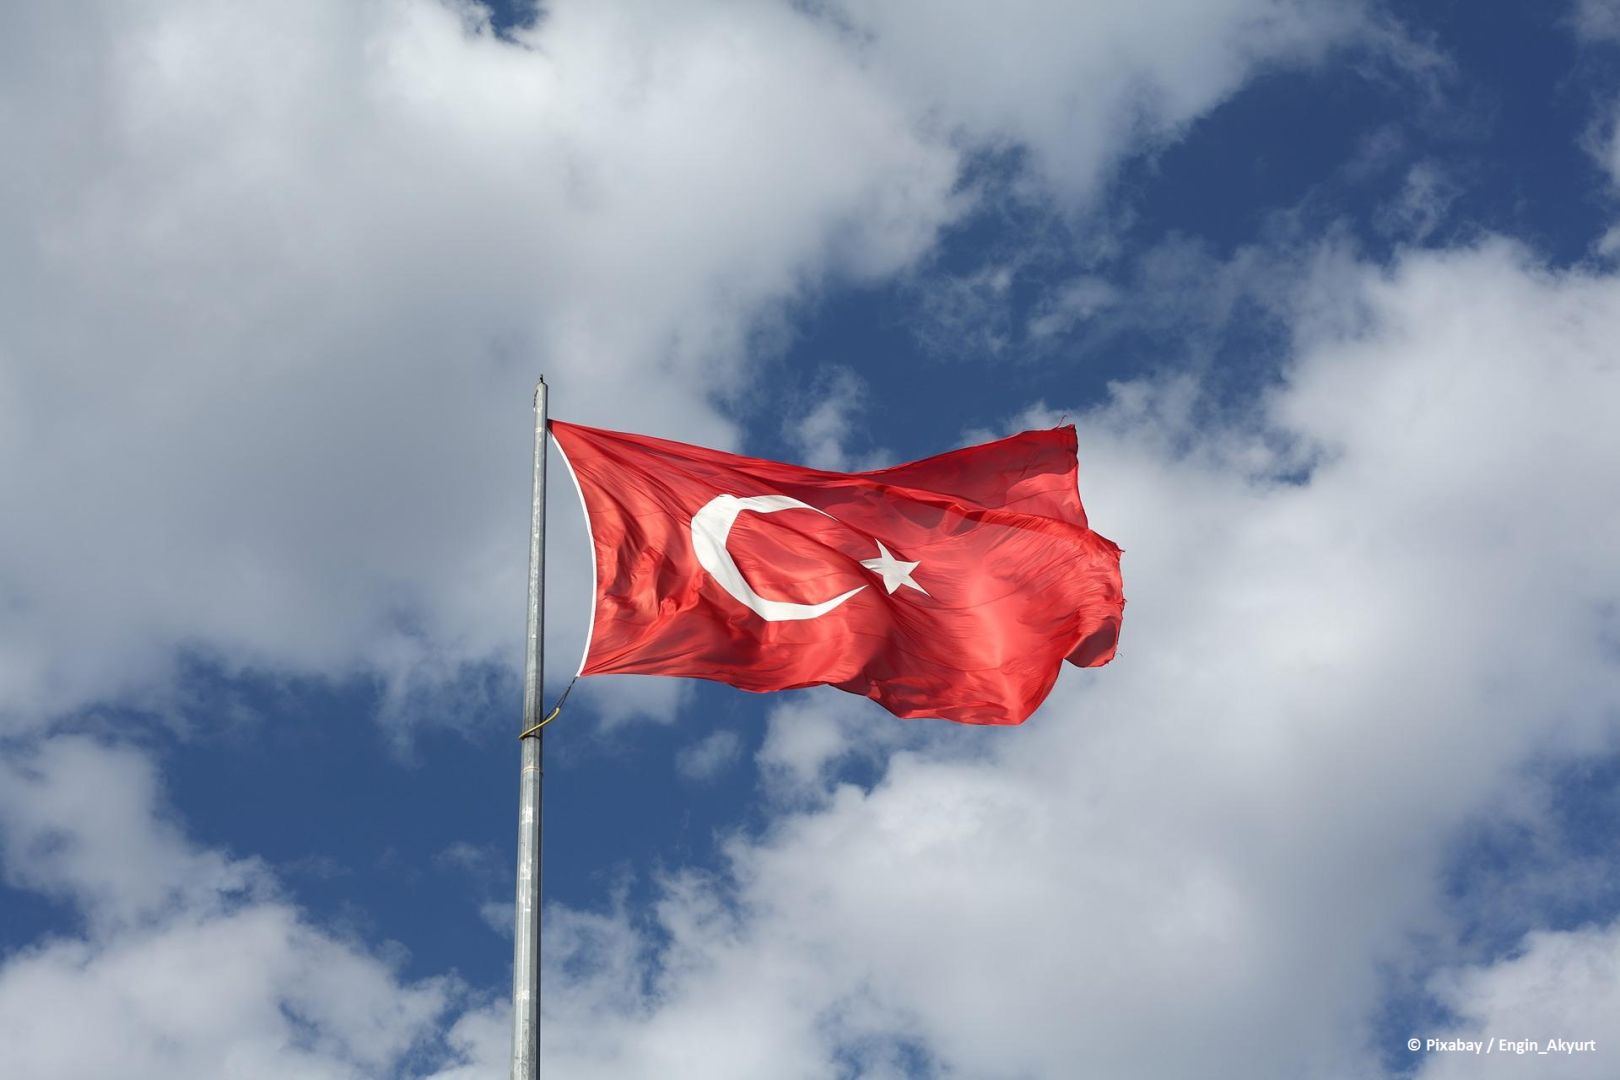 Türkiye fordert Schweden und Finnland auf, Mitglieder terroristischer Organisationen auszuliefern